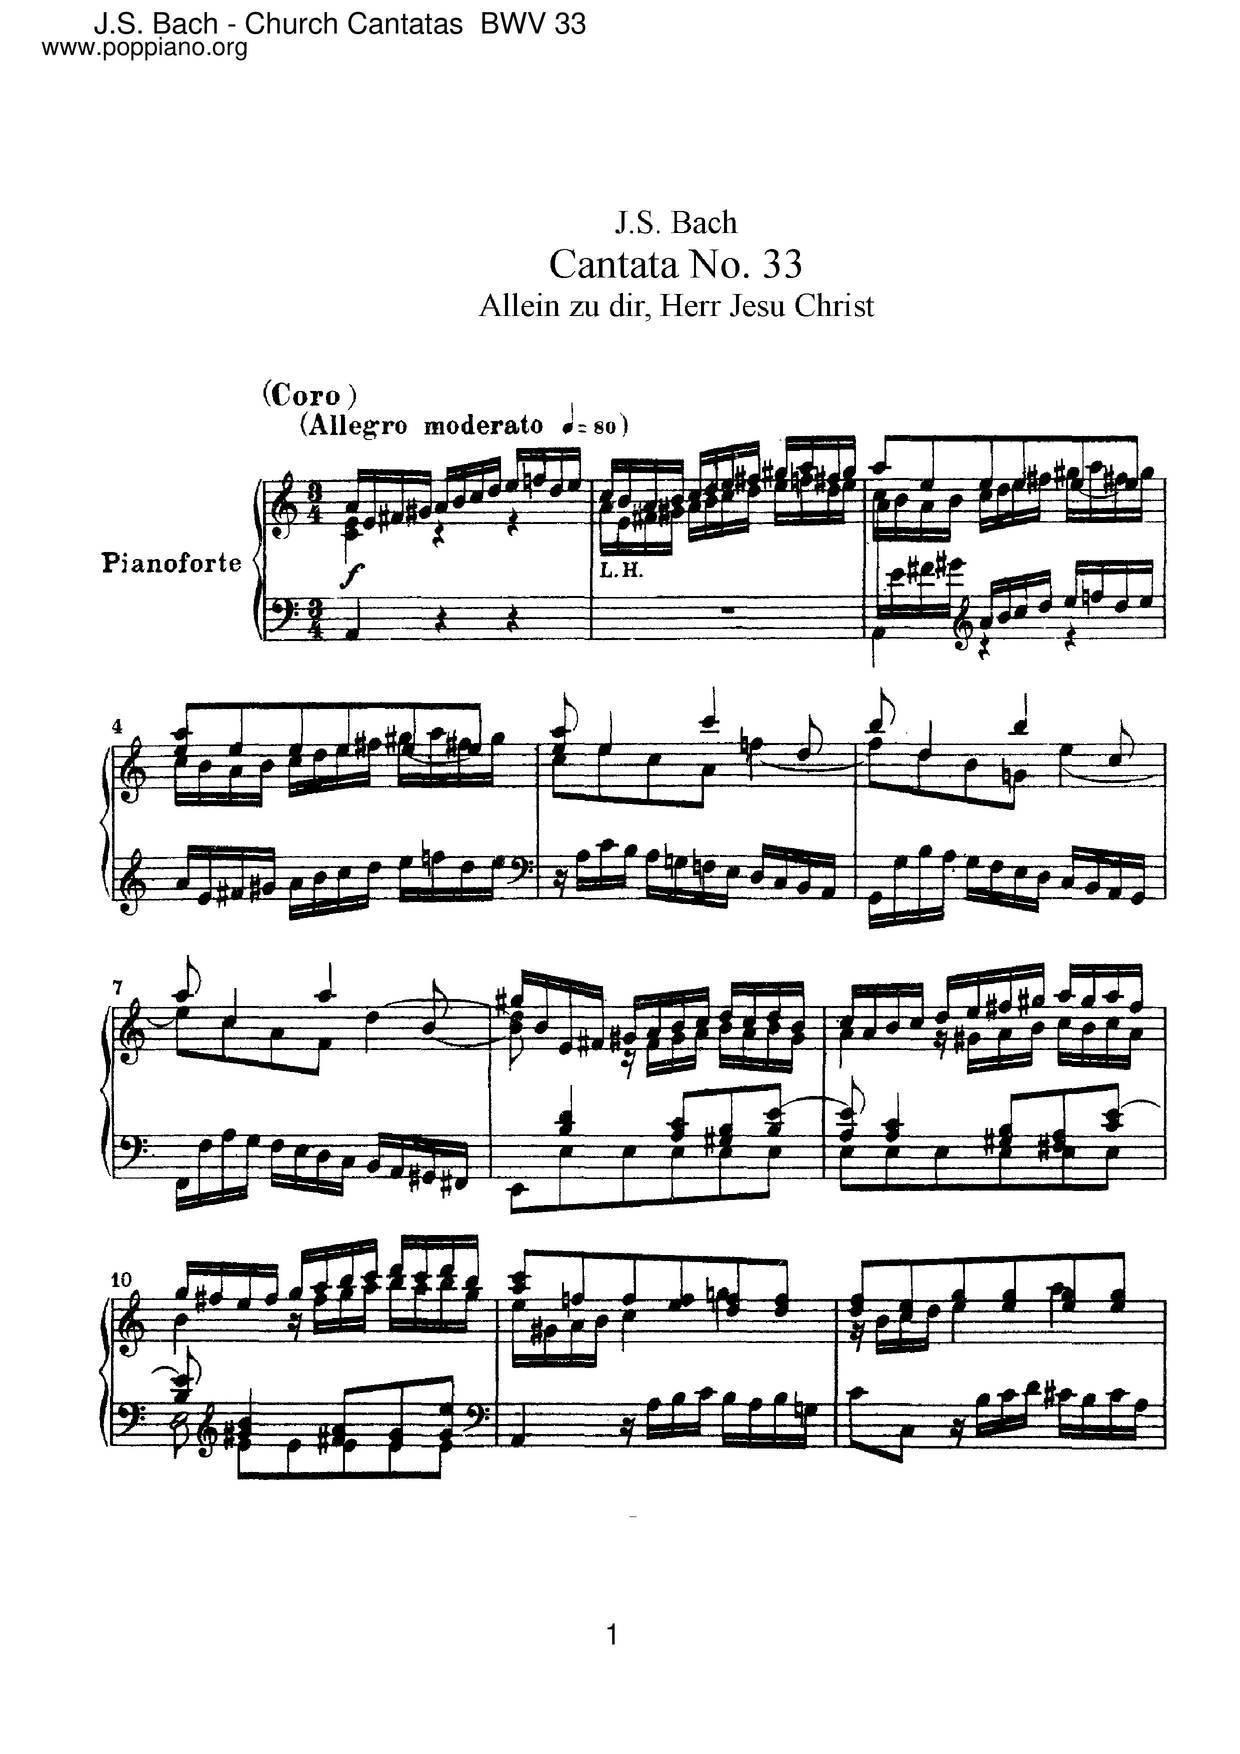 Allein Zu Dir, Herr Jesu Christ, BWV 33 Score